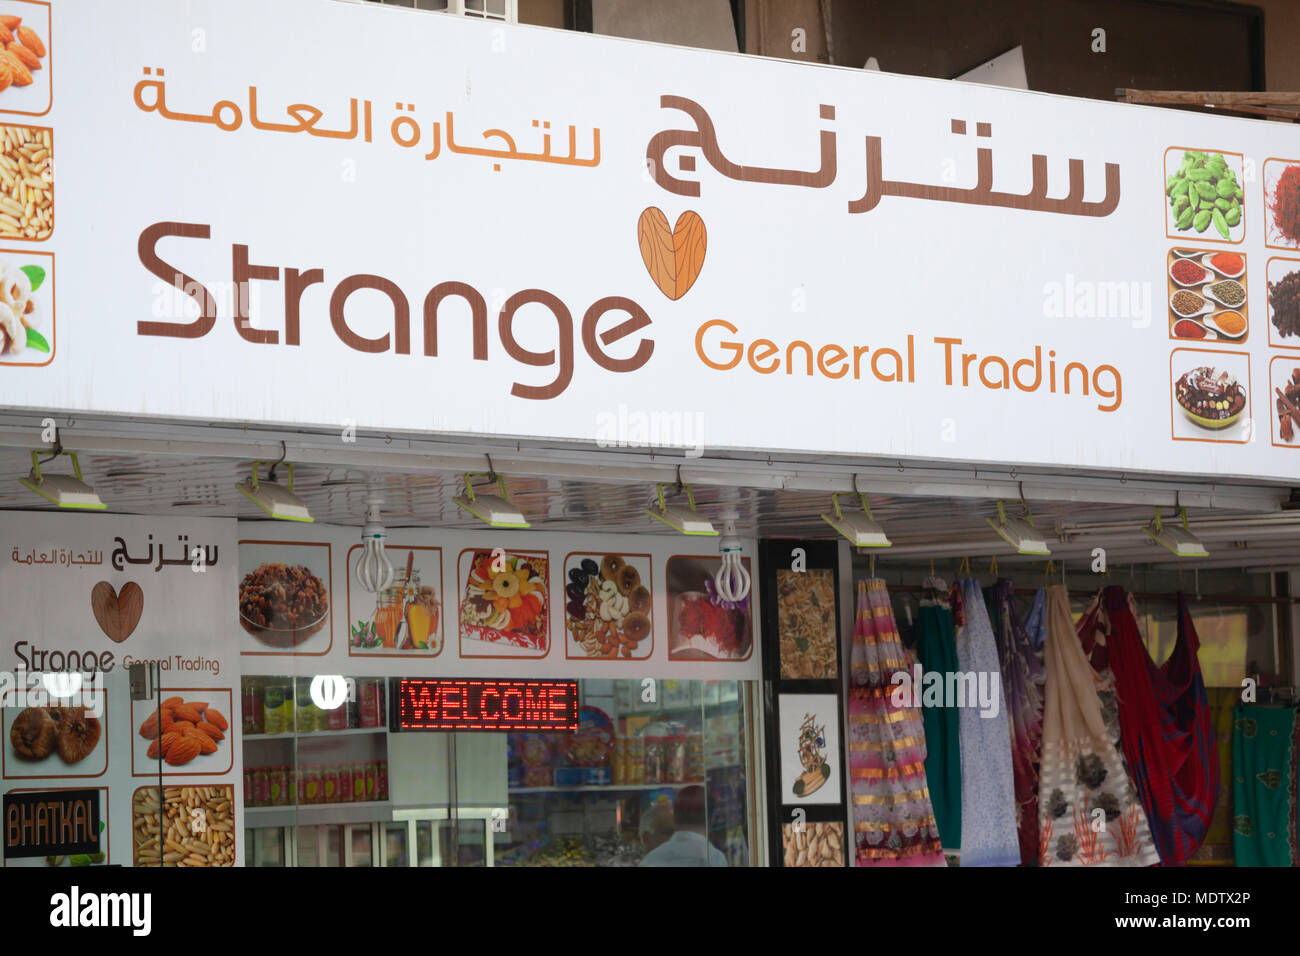 Unusual shop name, Dubai, United Arab Emirates, Middle East Stock Photo